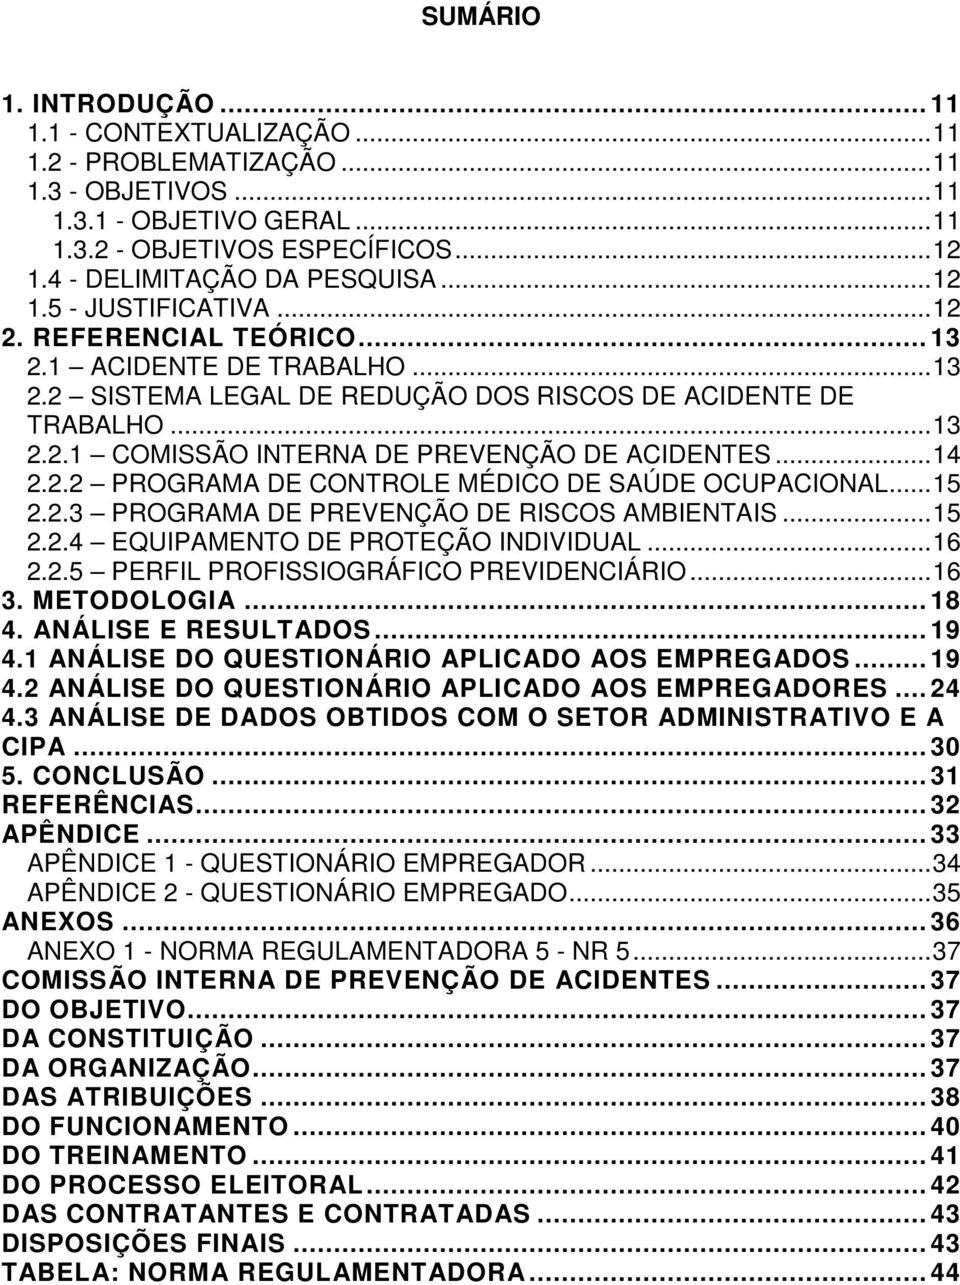 .. 14 2.2.2 PROGRAMA DE CONTROLE MÉDICO DE SAÚDE OCUPACIONAL... 15 2.2.3 PROGRAMA DE PREVENÇÃO DE RISCOS AMBIENTAIS... 15 2.2.4 EQUIPAMENTO DE PROTEÇÃO INDIVIDUAL... 16 2.2.5 PERFIL PROFISSIOGRÁFICO PREVIDENCIÁRIO.